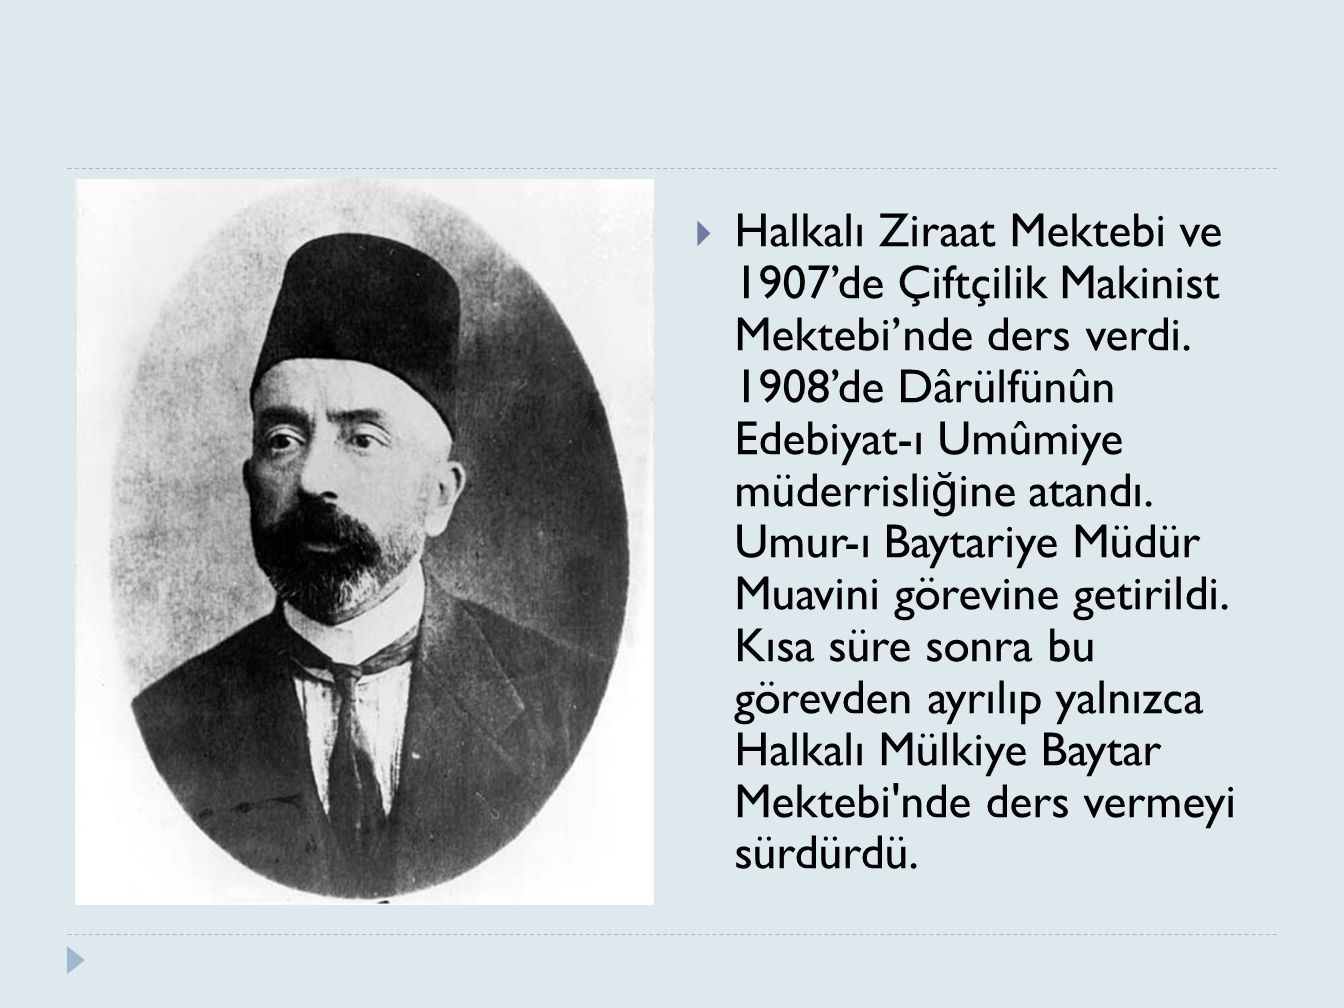 Halkalı Ziraat Mektebi ve 1907’de Çiftçilik Makinist Mektebi’nde ders verdi.